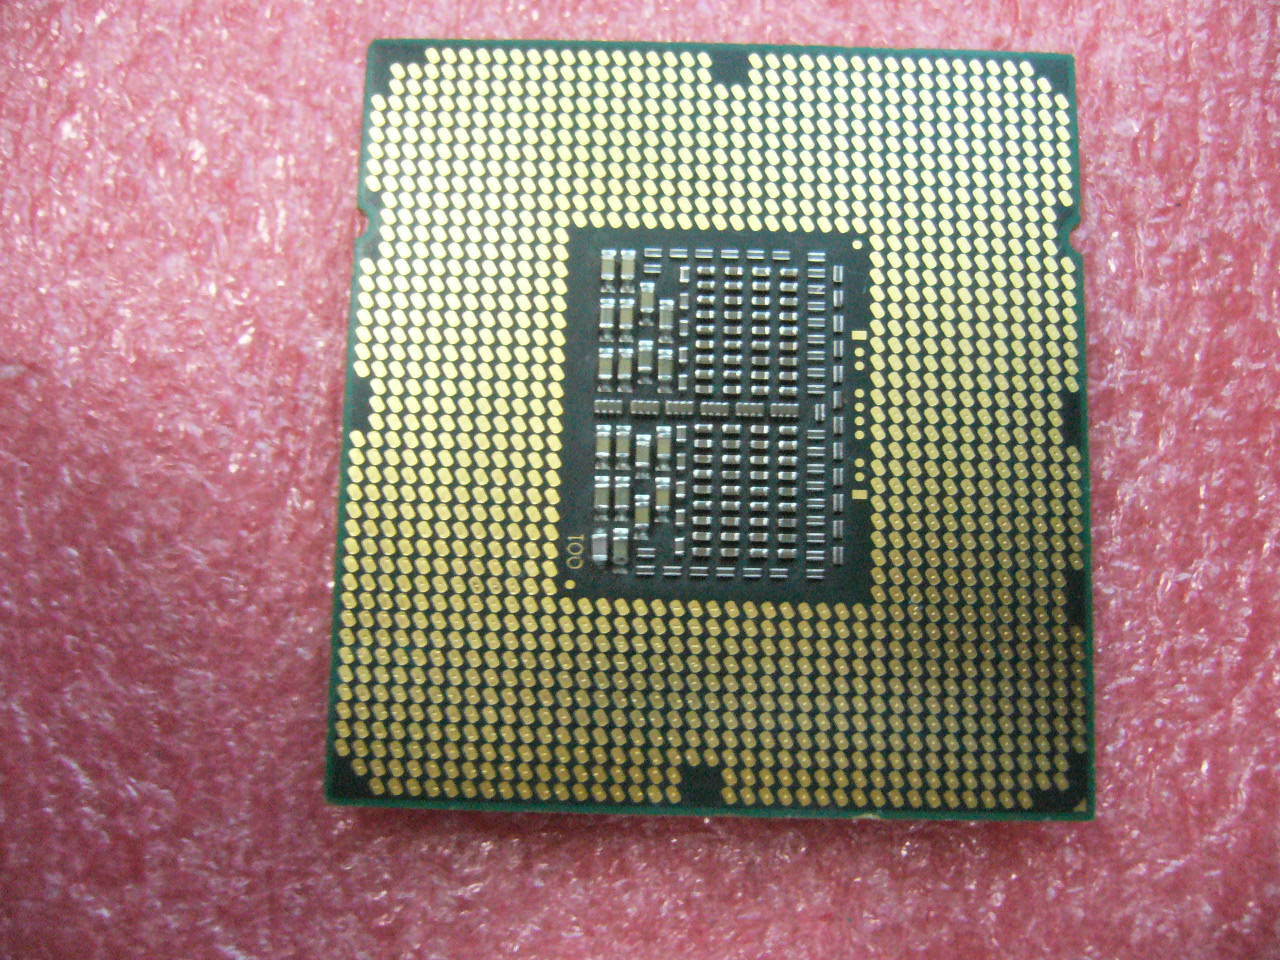 QTY 1x INTEL Quad-Cores CPU W3520 2.66GHZ/8MB 4.8GT/s QPI LGA1366 SLBEW - Click Image to Close